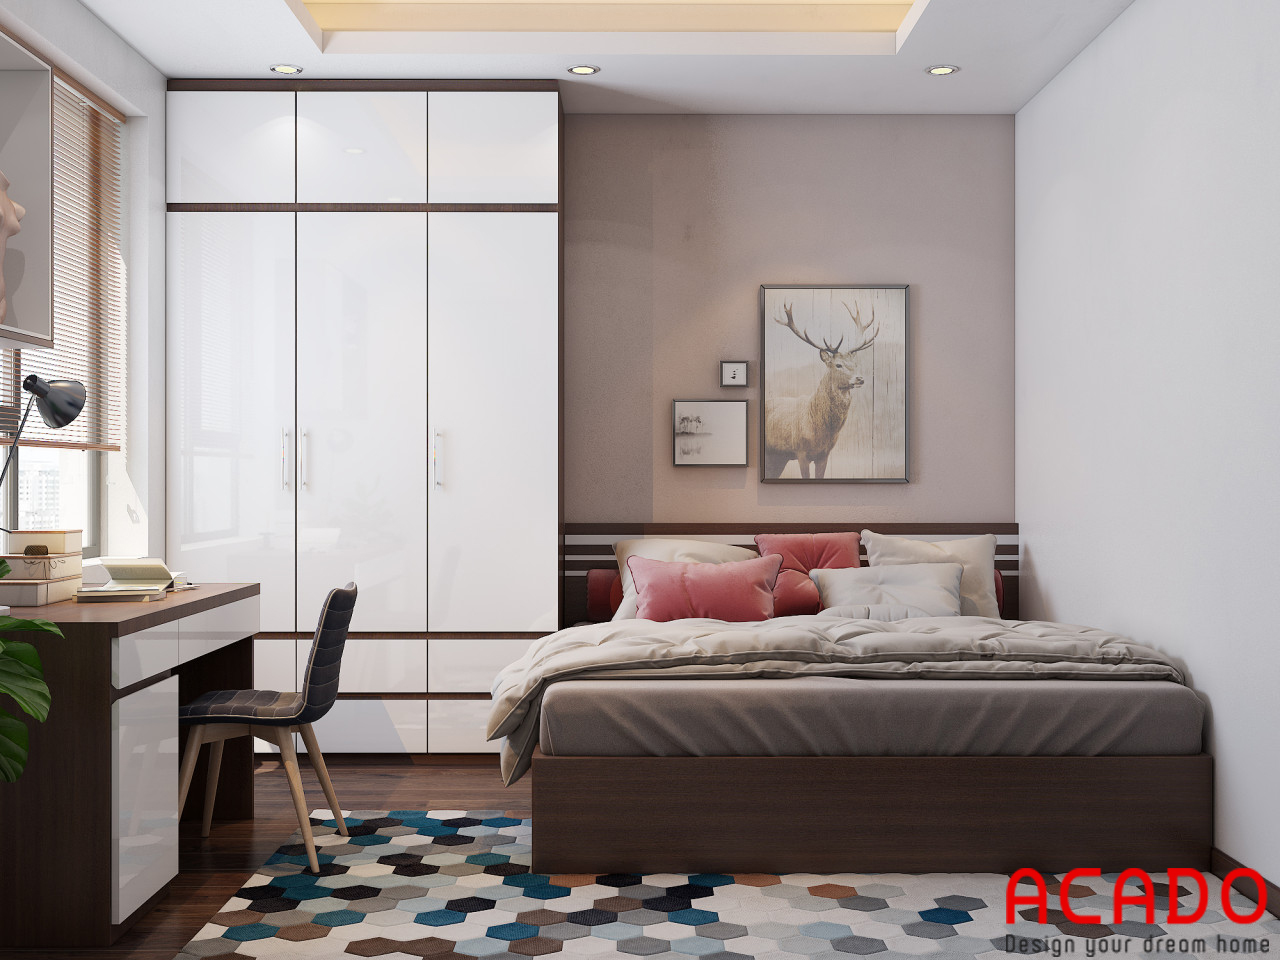 Với màu trắng kết hợp màu vân gỗ tạo điểm nhấn. Phòng ngủ mang phong cách hiện đại